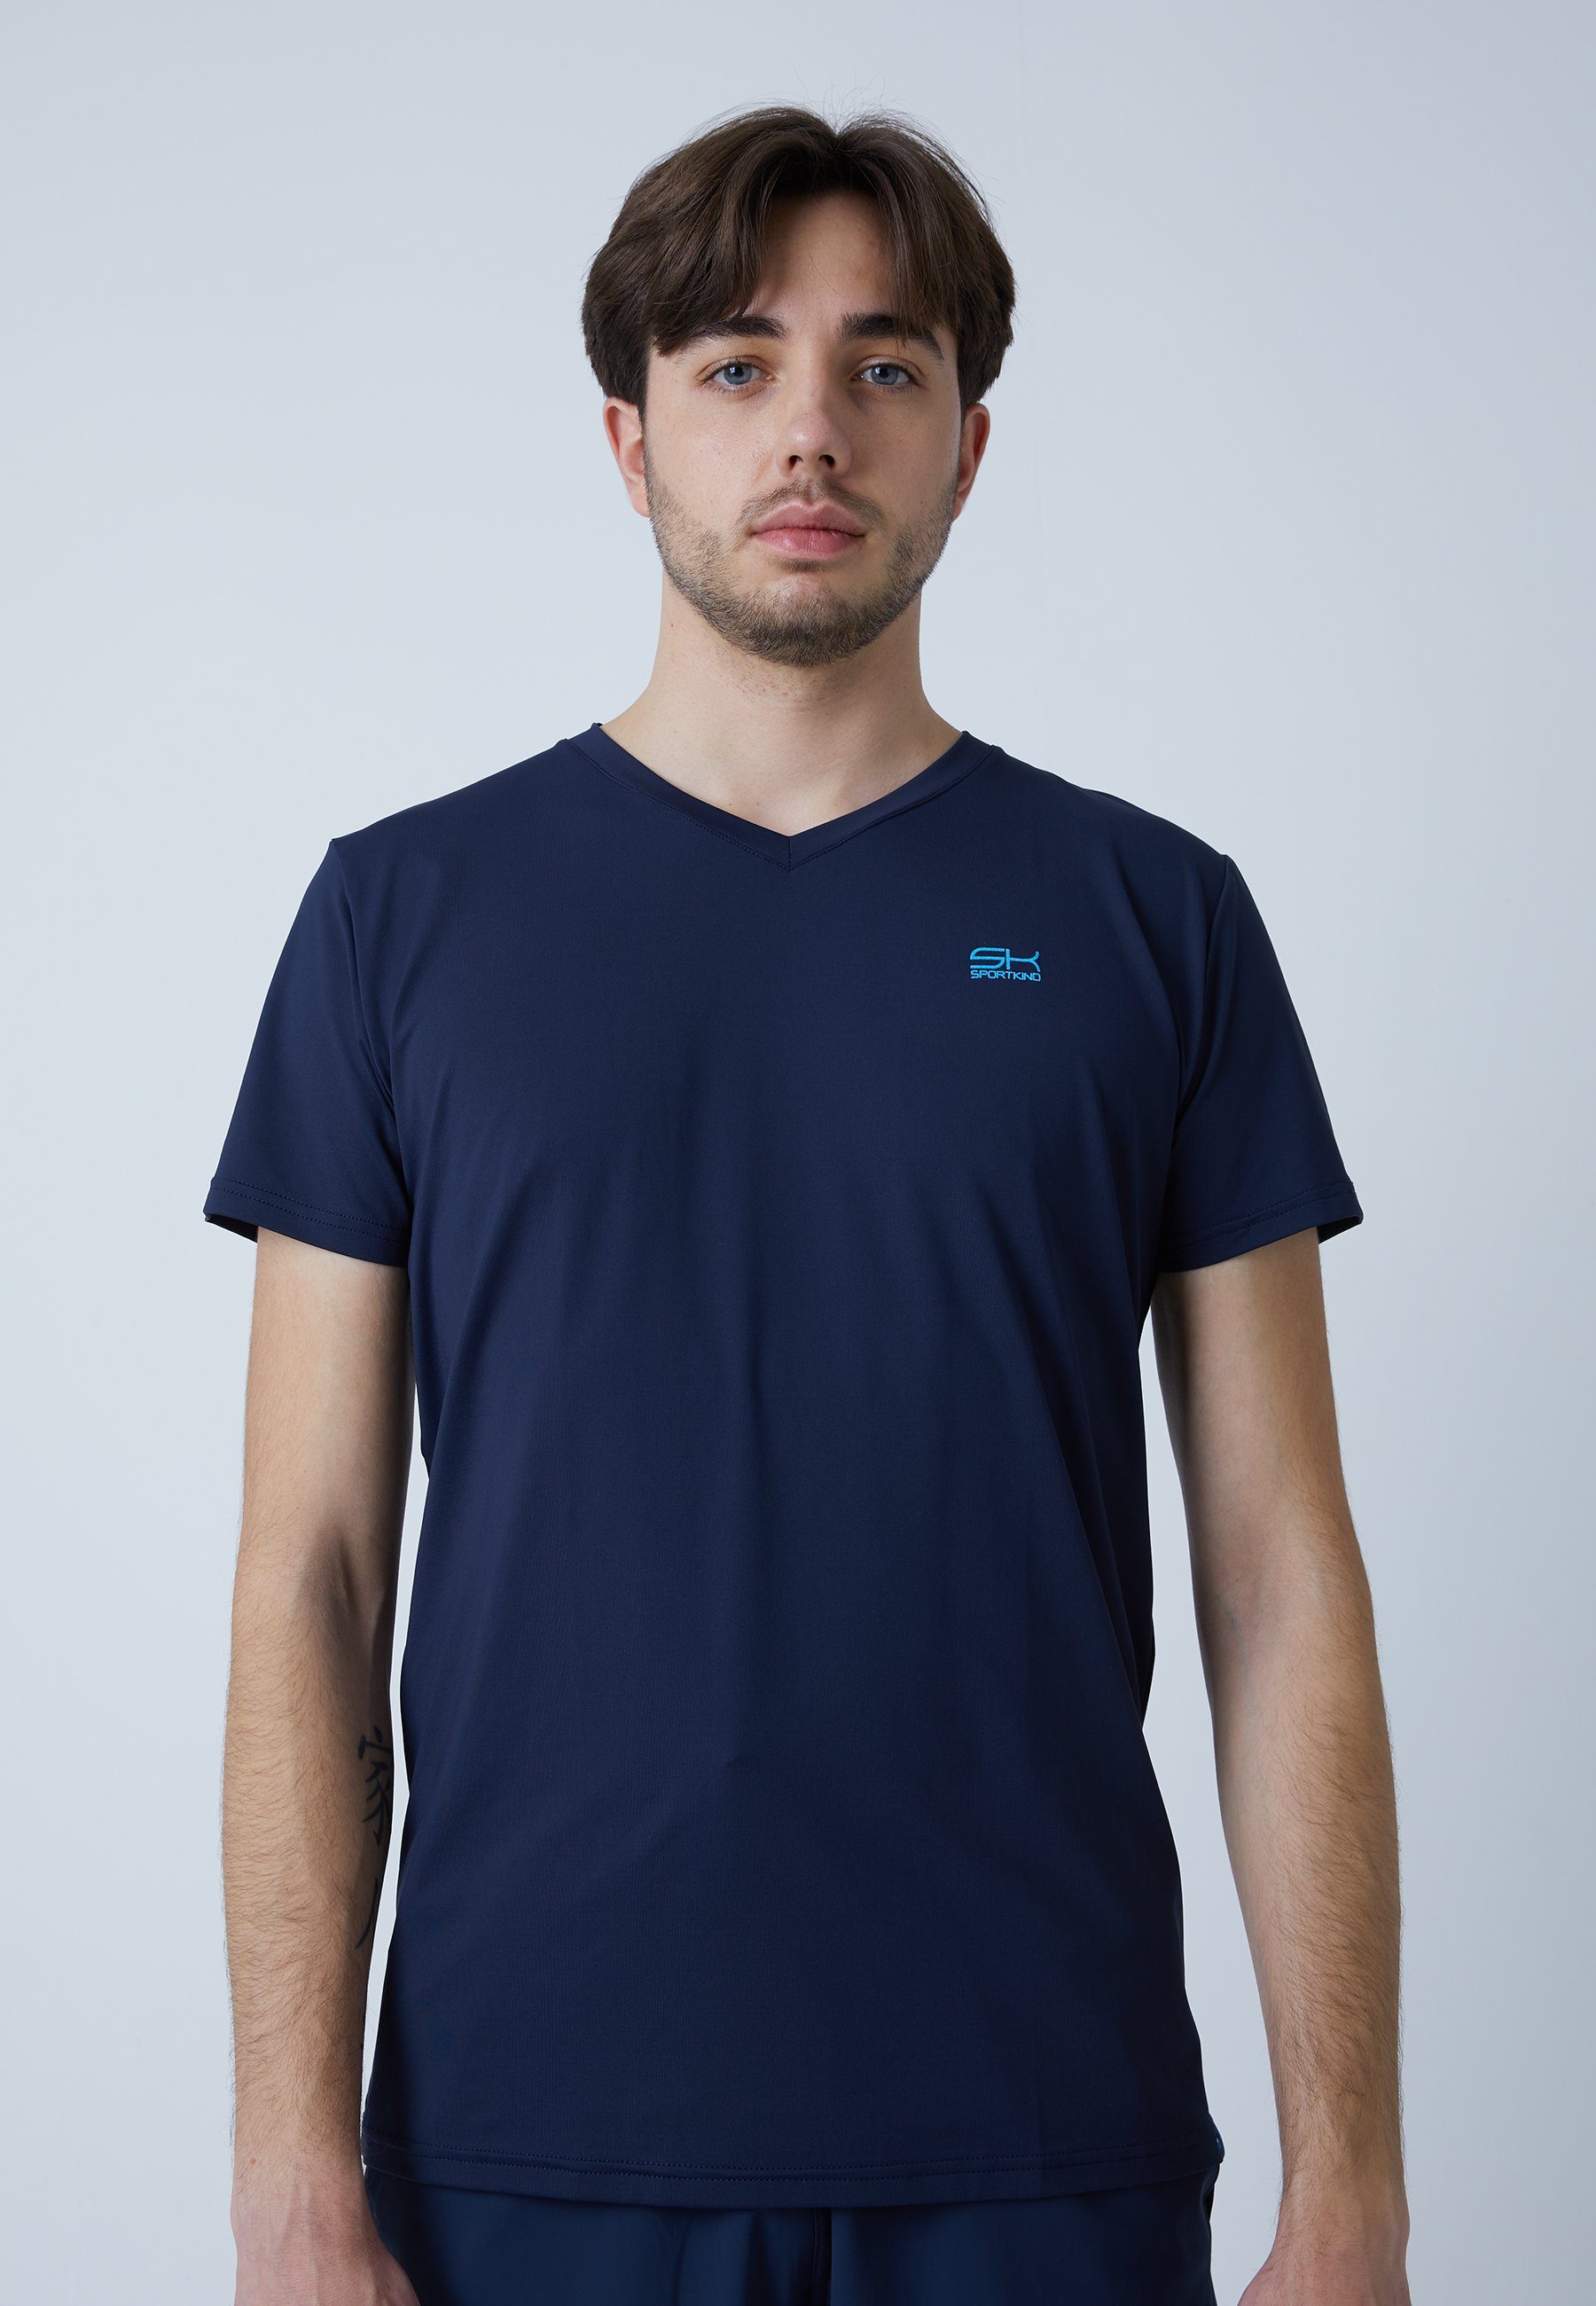 Tennis SPORTKIND navy Funktionsshirt & V-Ausschnitt Jungen T-Shirt blau Herren